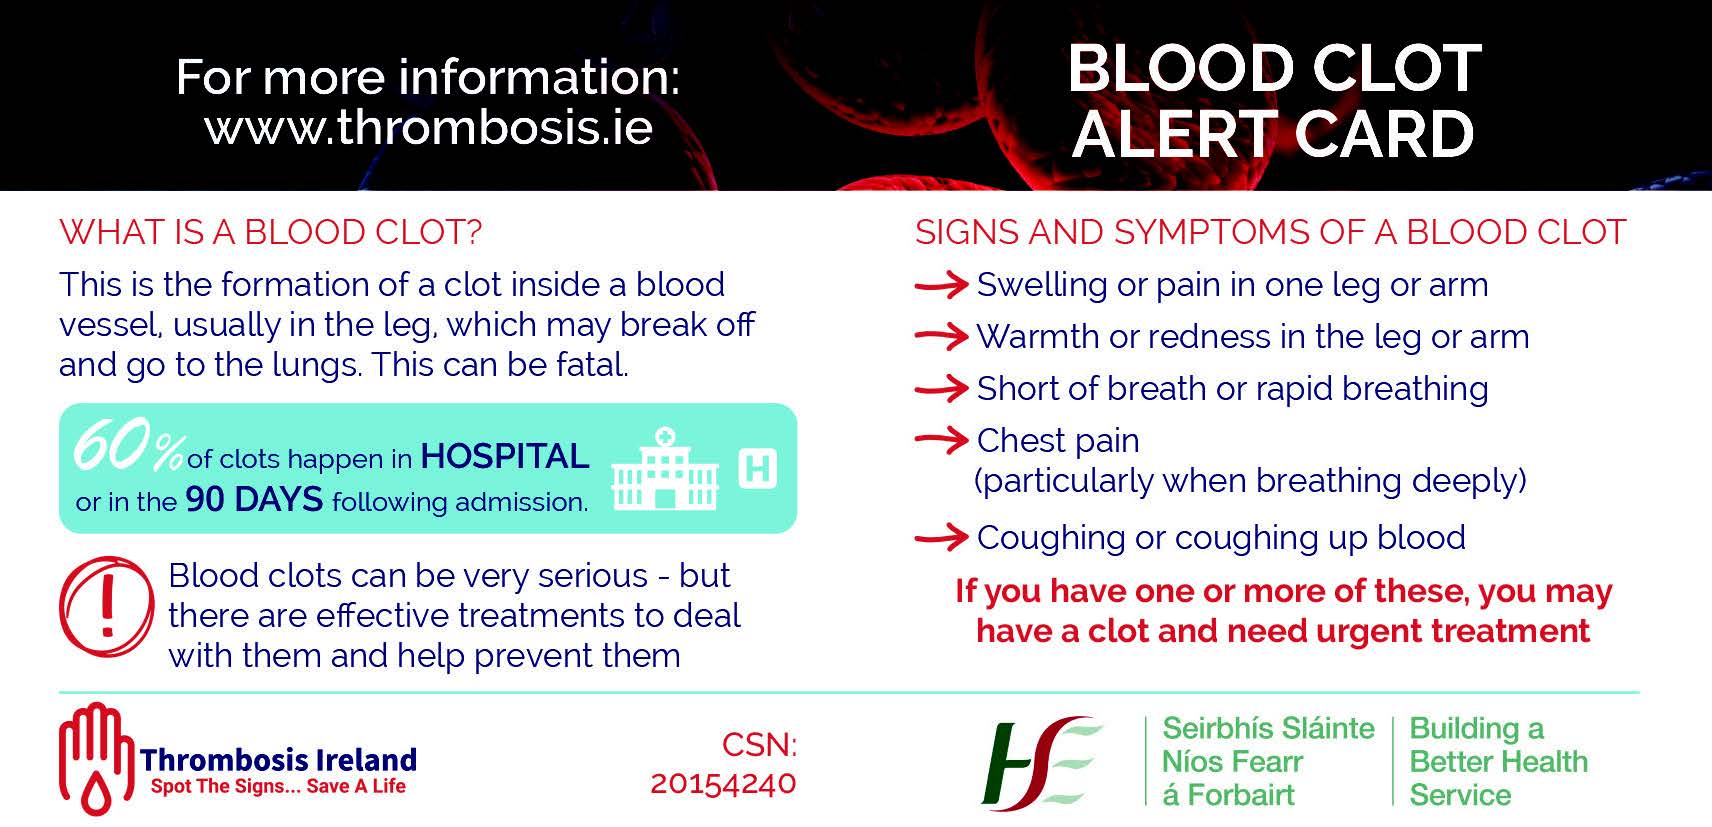 Blood clot alert card